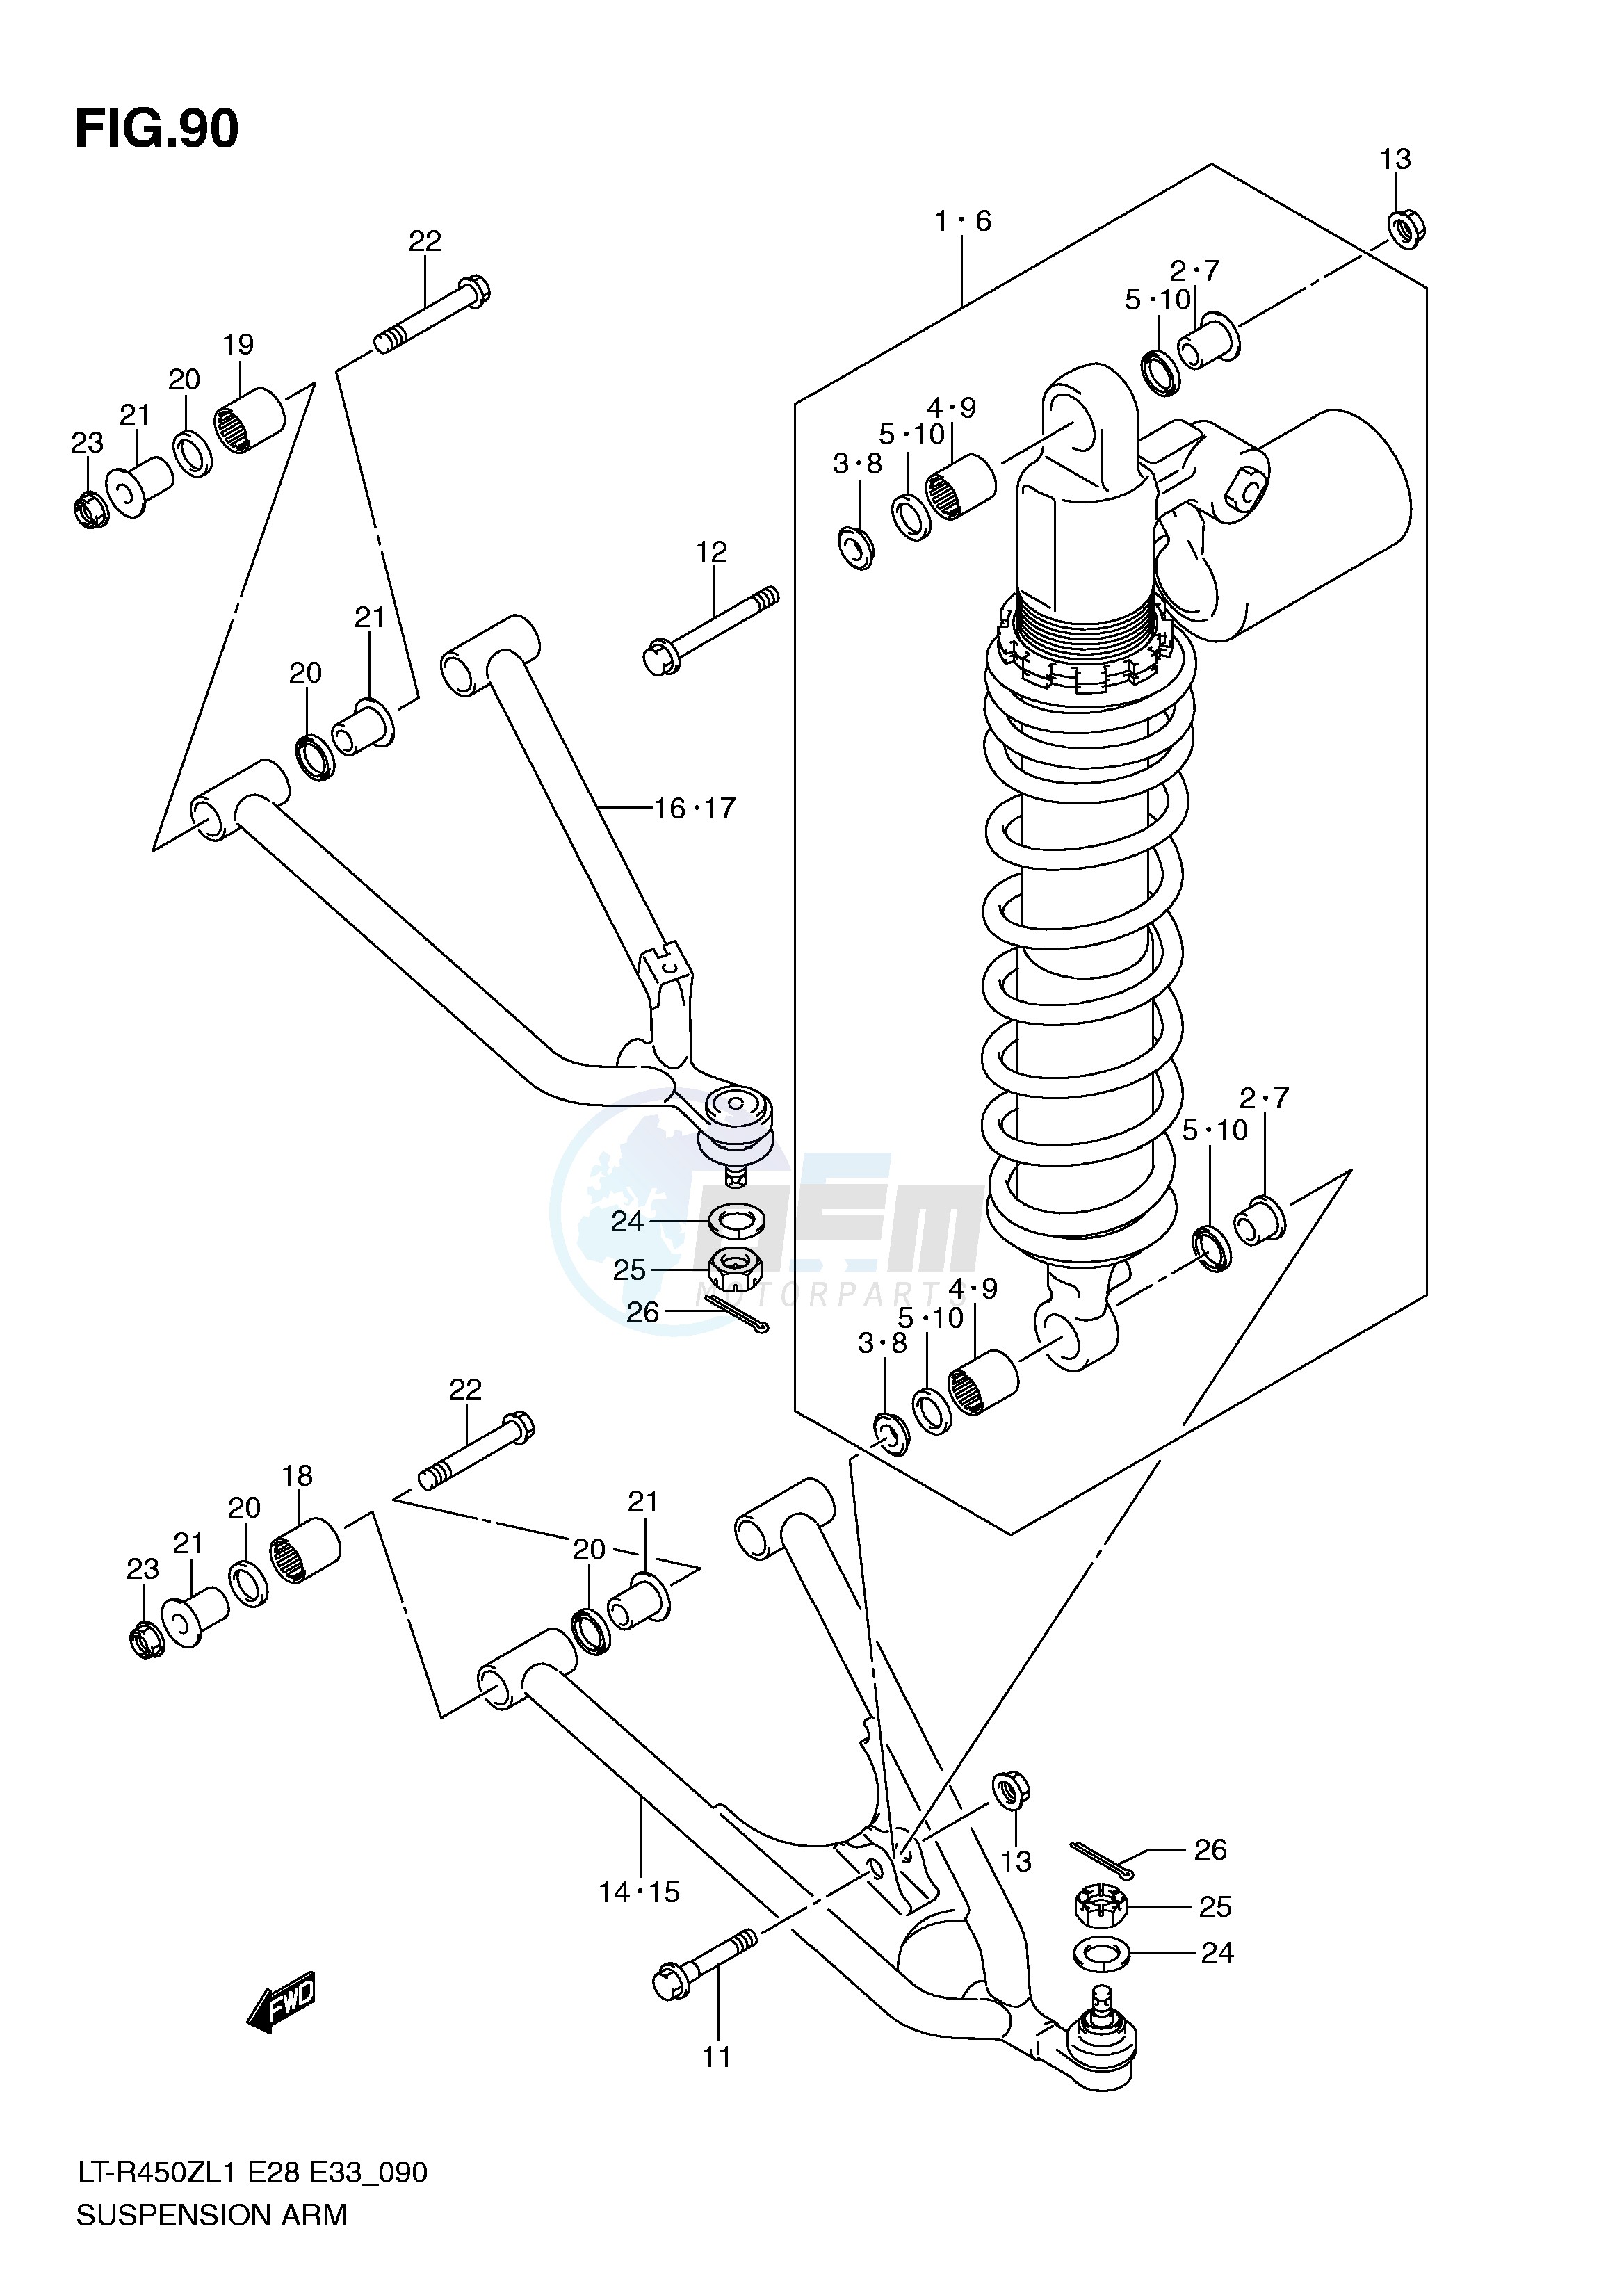 SUSPENSION ARM (LT-R450L1 E28) blueprint